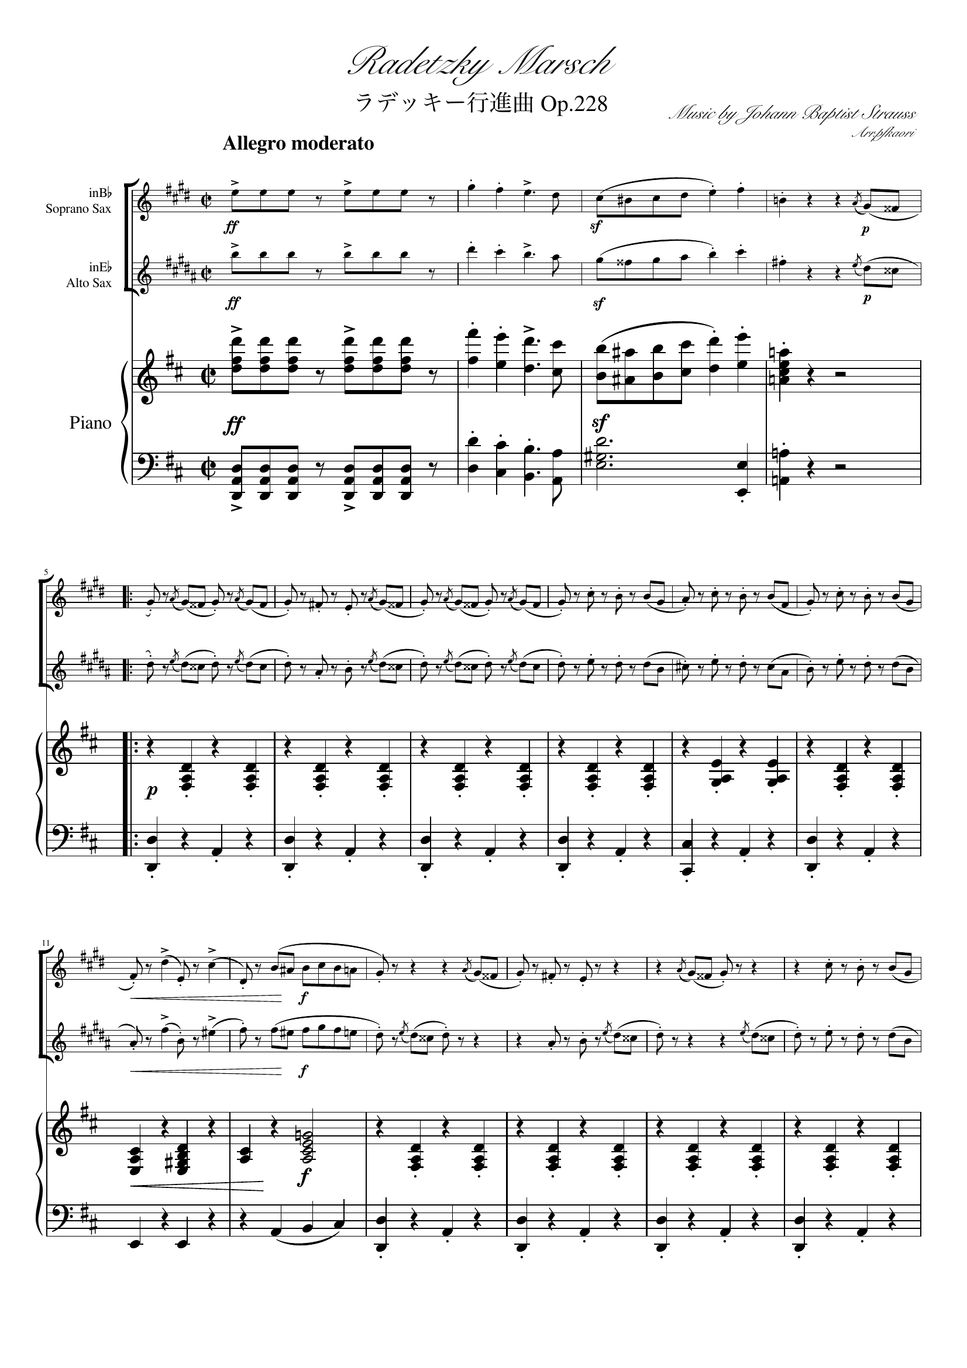 ヨハンシュトラウス1世 - ラデッキー行進曲 (D・ピアノトリオ/ソプラノサックス&アルトサックス) by pfkaori